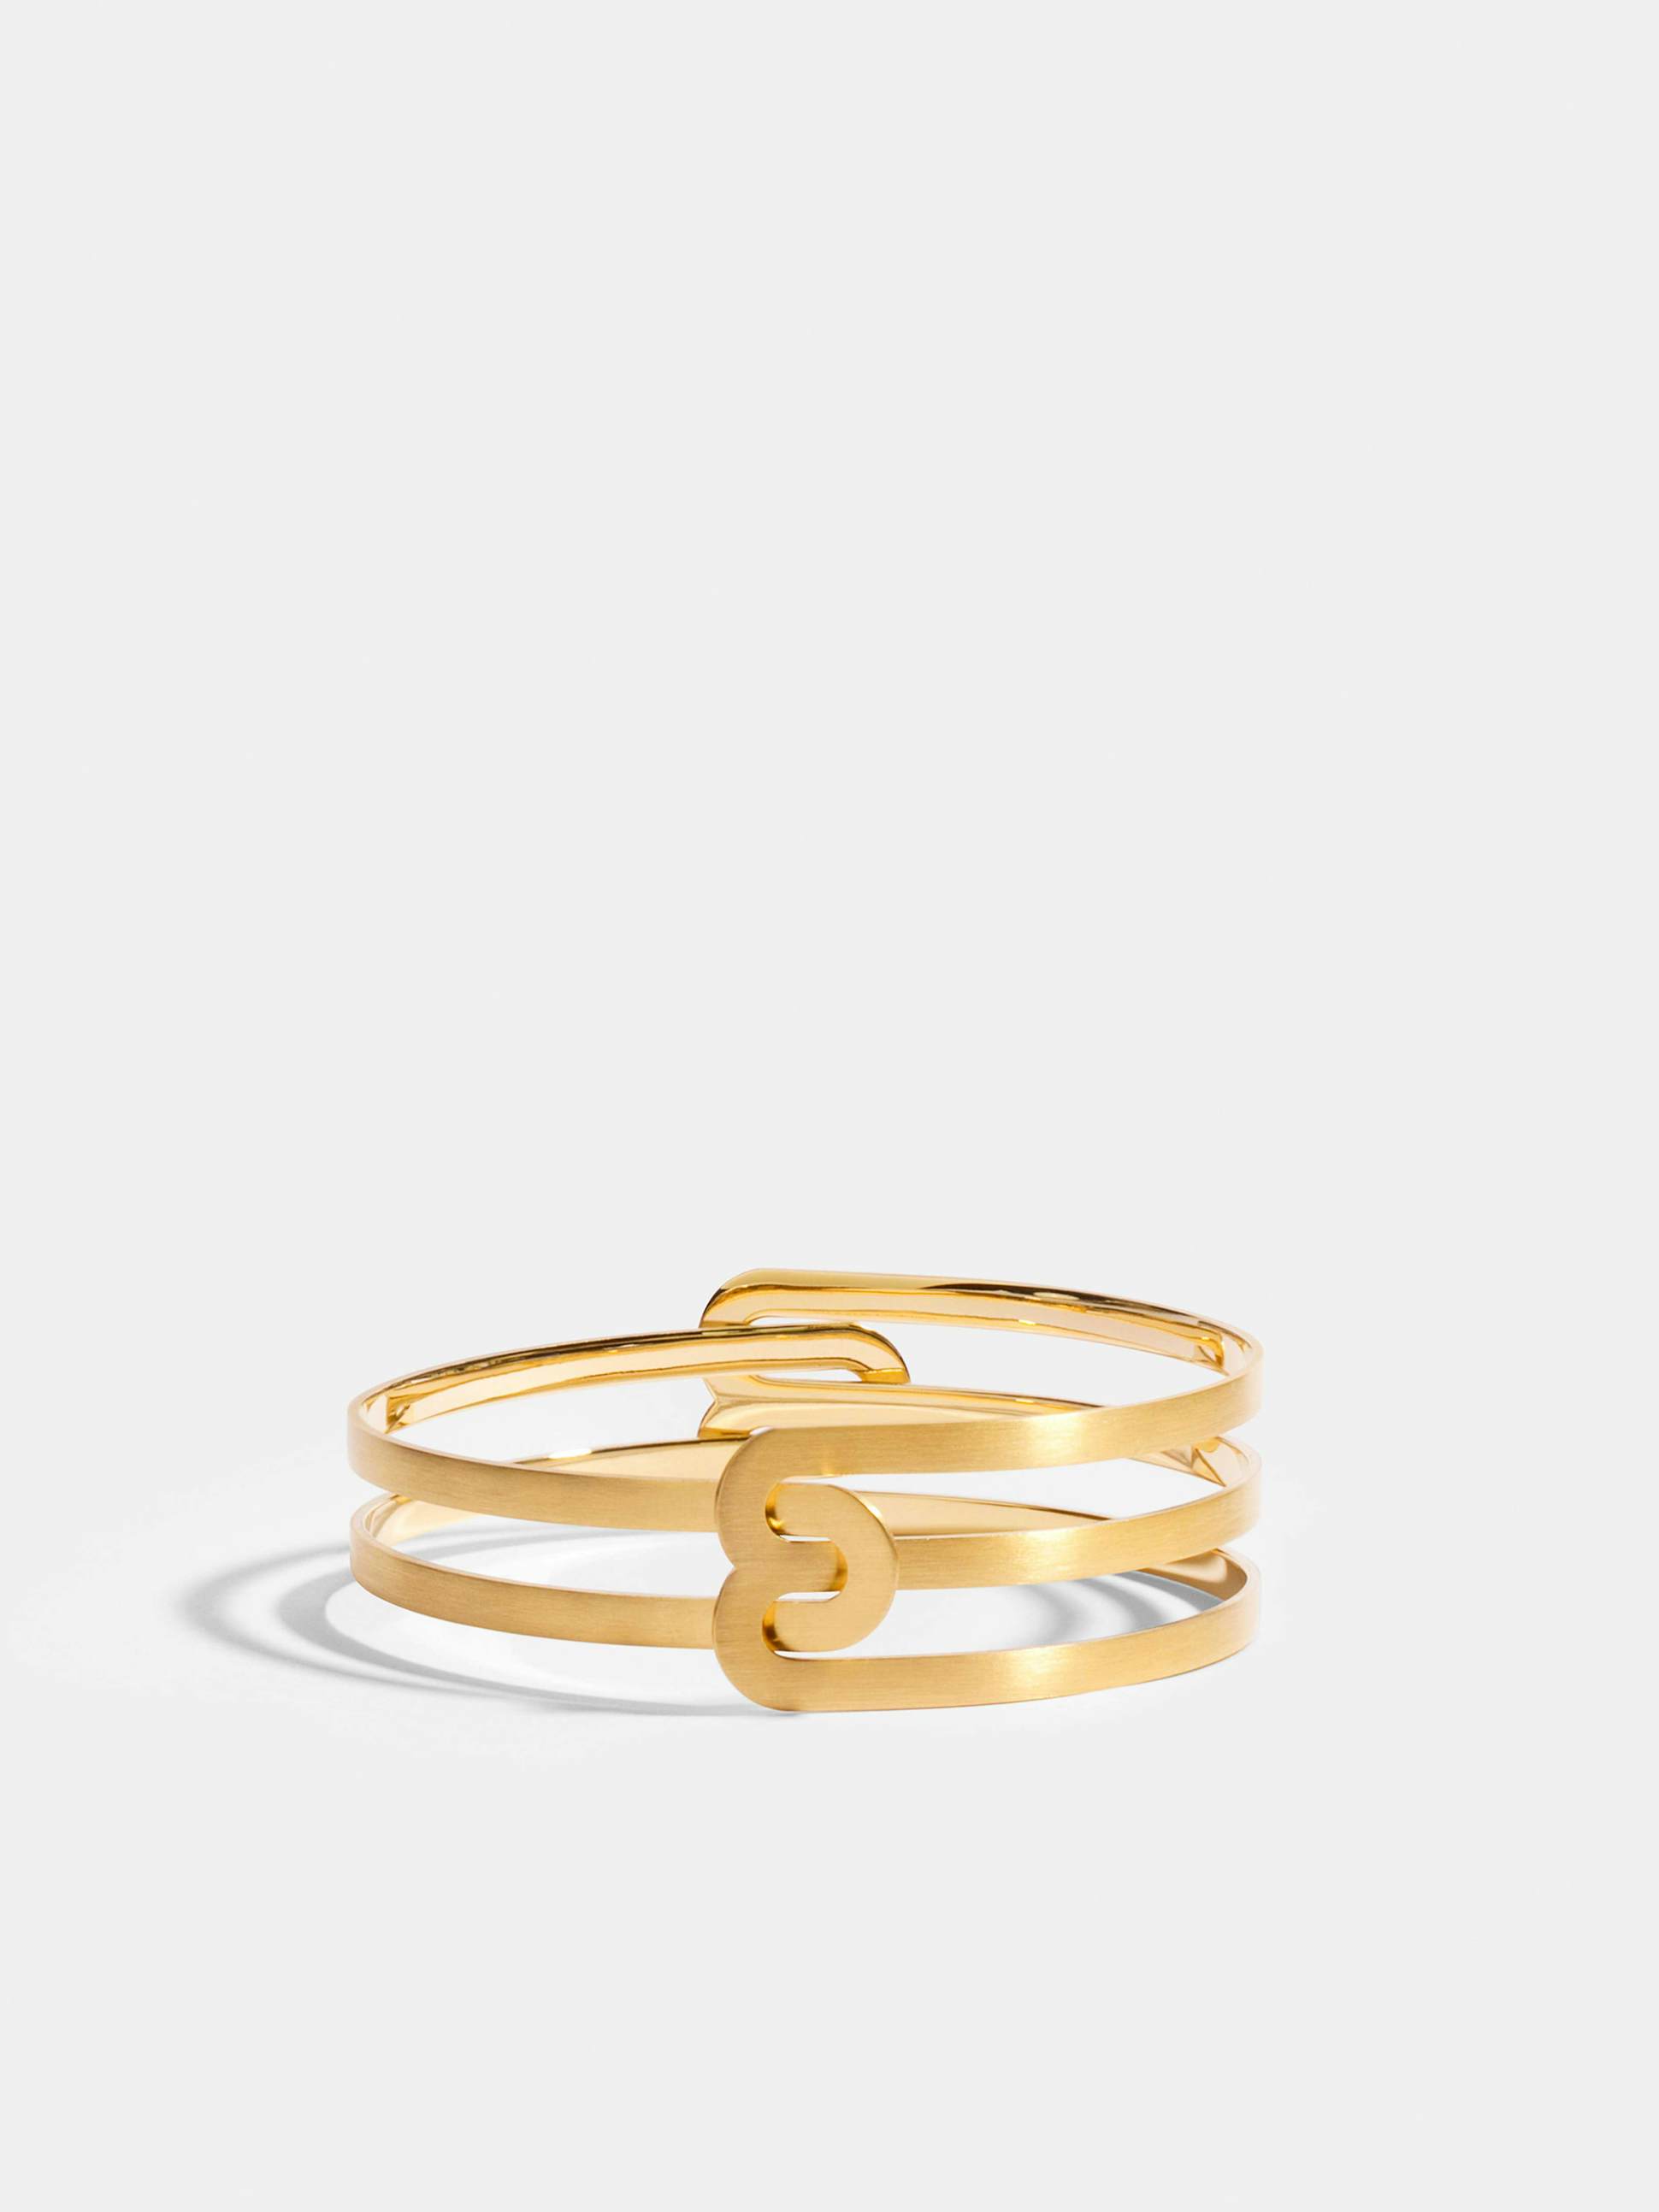 Bracelet Étreintes en Or jaune éthique 18 carats certifié Fairmined composé d'un demi-bracelet simple finition brossée et d'un demi-bracelet double finition brossée.